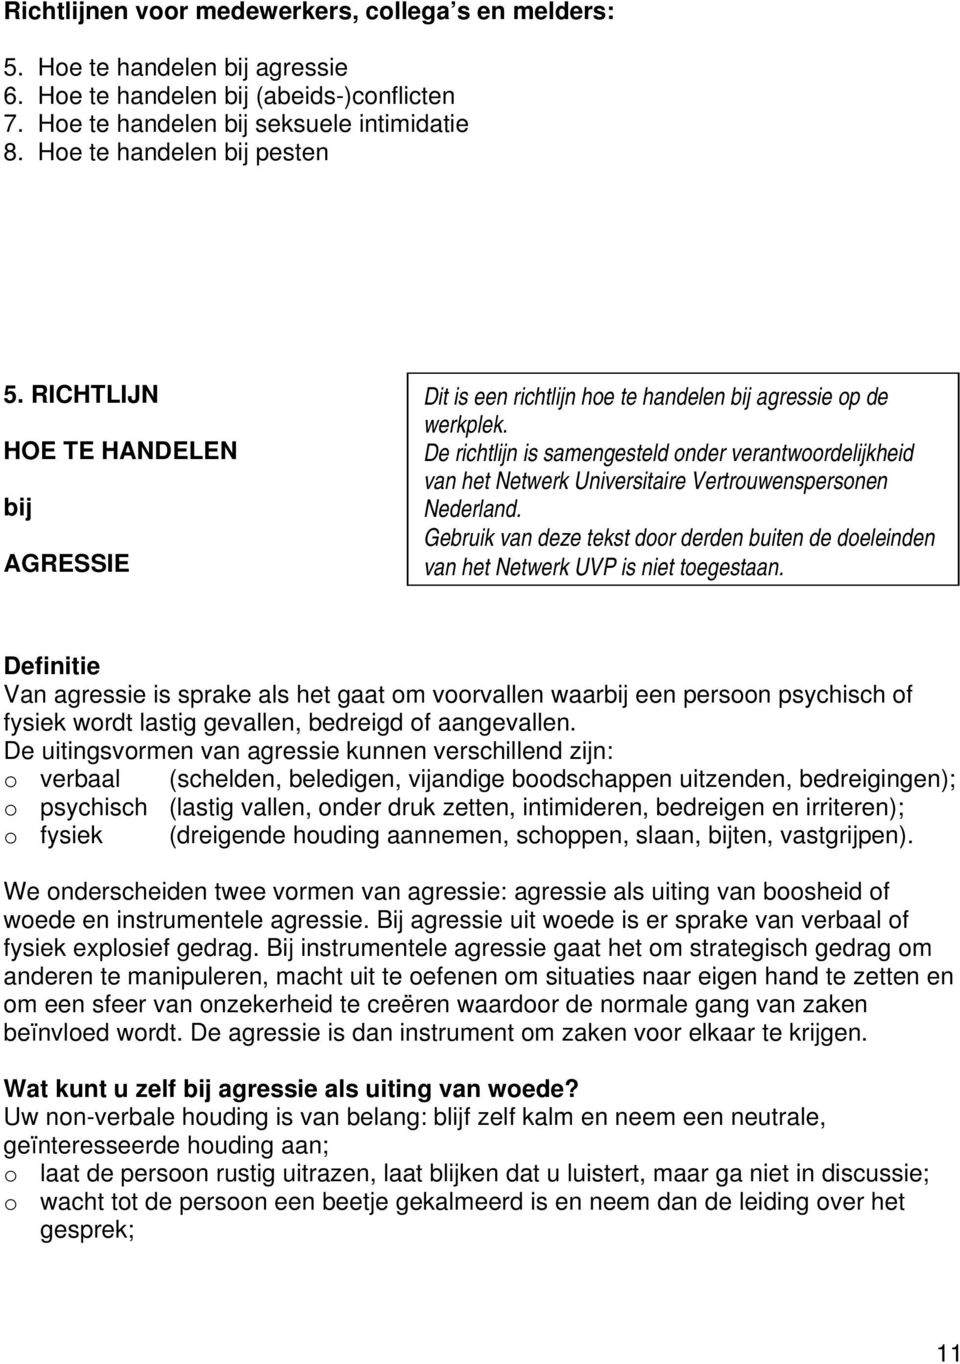 De richtlijn is samengesteld nder verantwrdelijkheid van het Netwerk Universitaire Vertruwenspersnen Nederland.